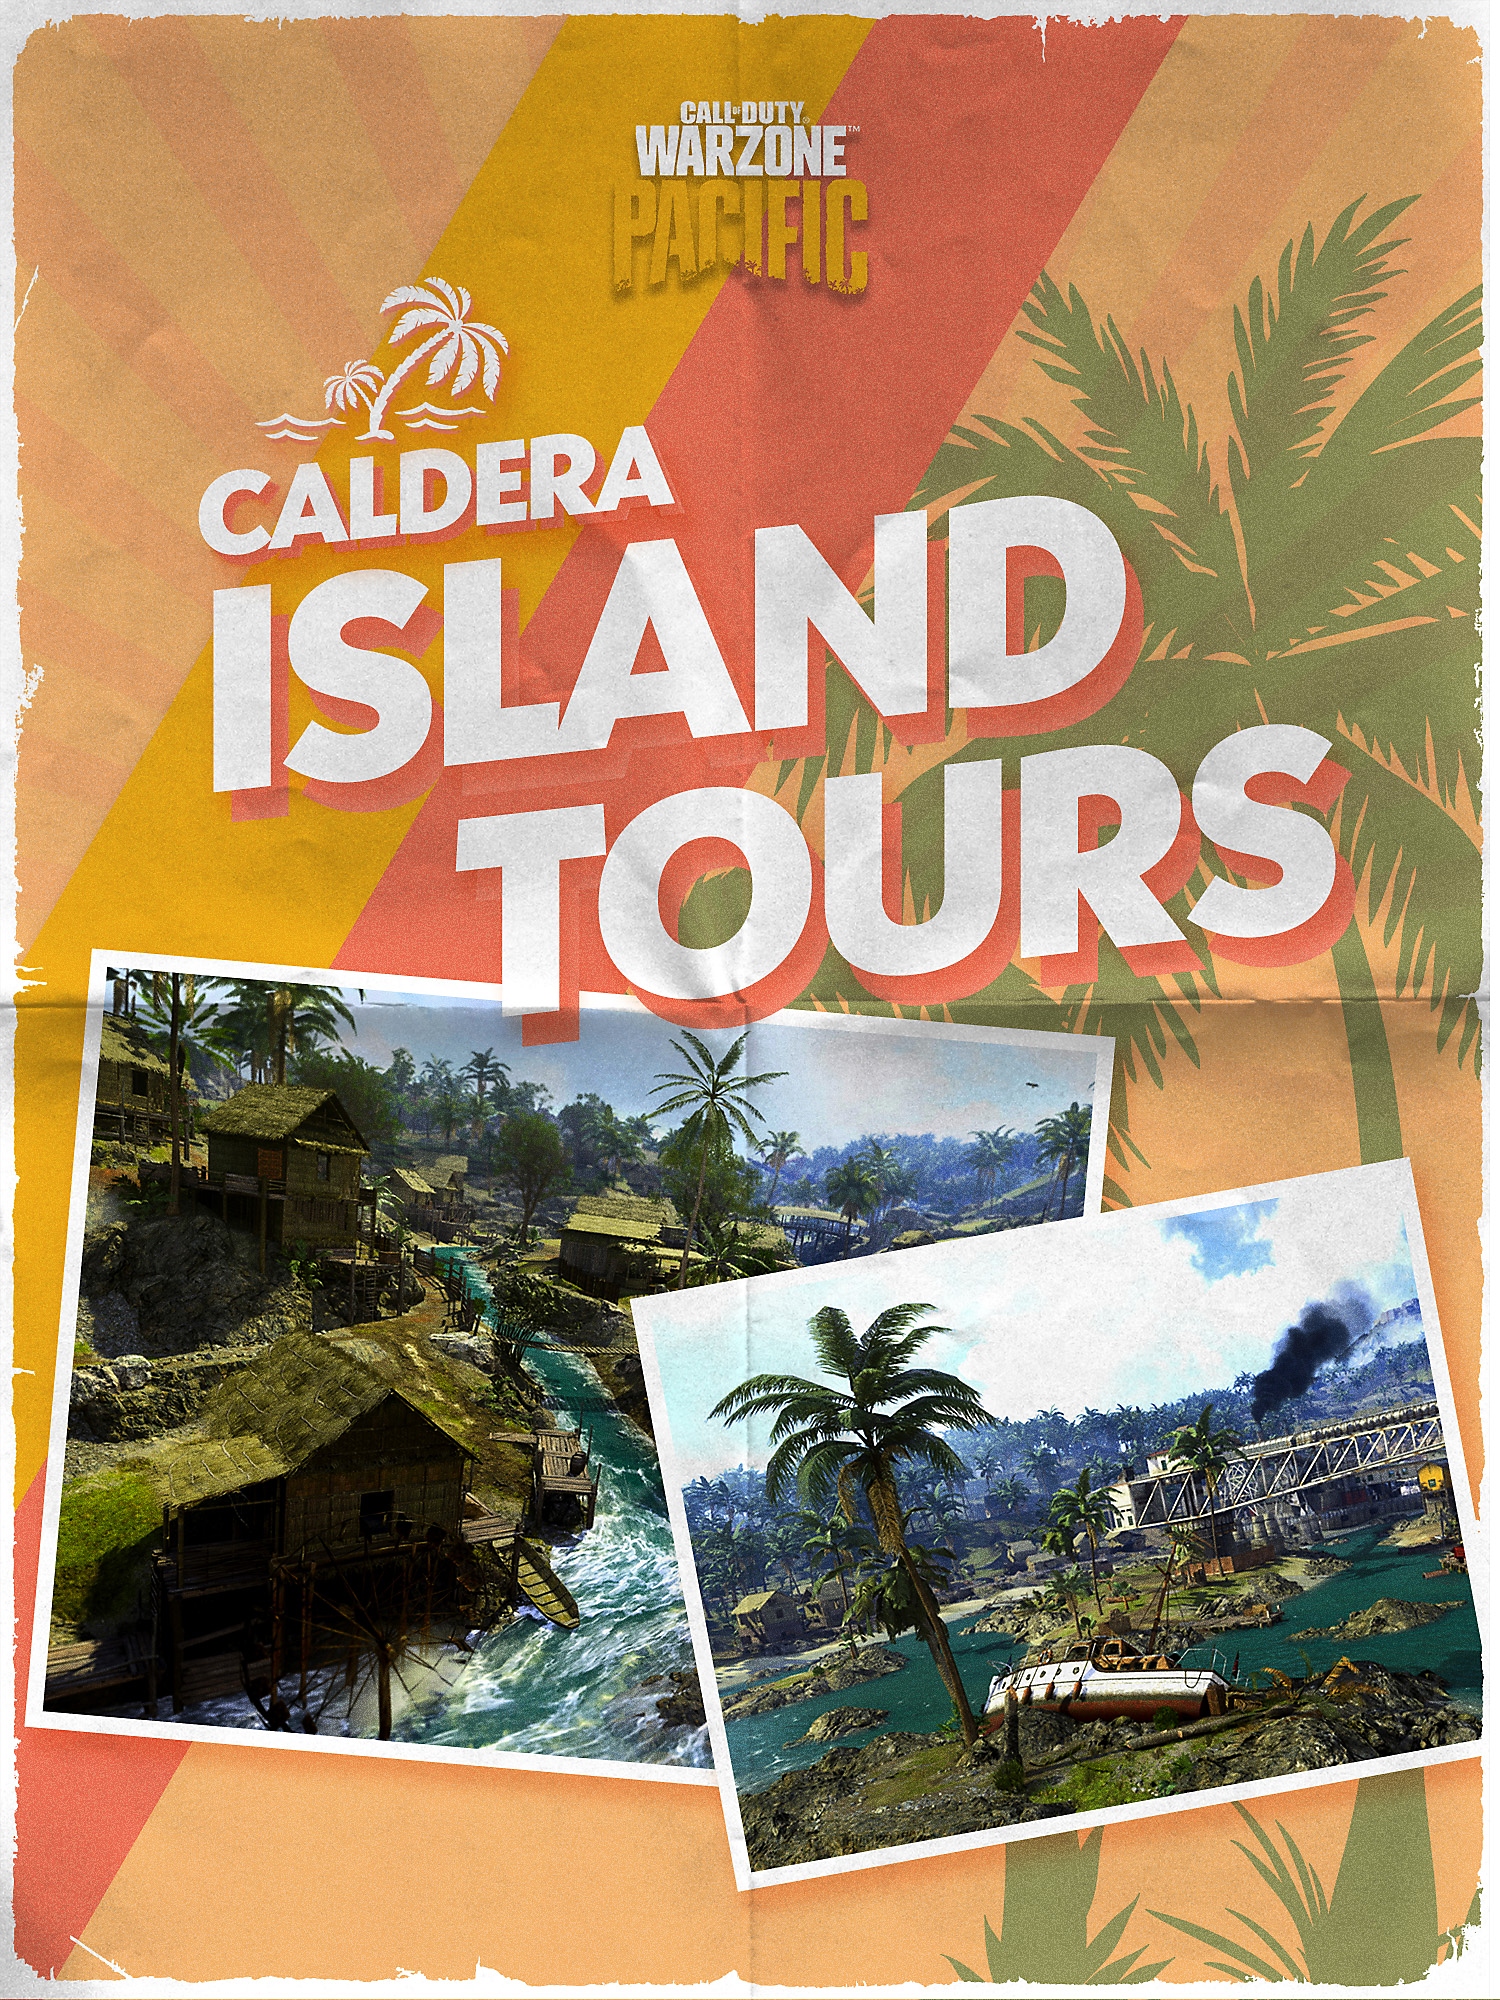 Couverture de la brochure des visites insulaires de Caldera